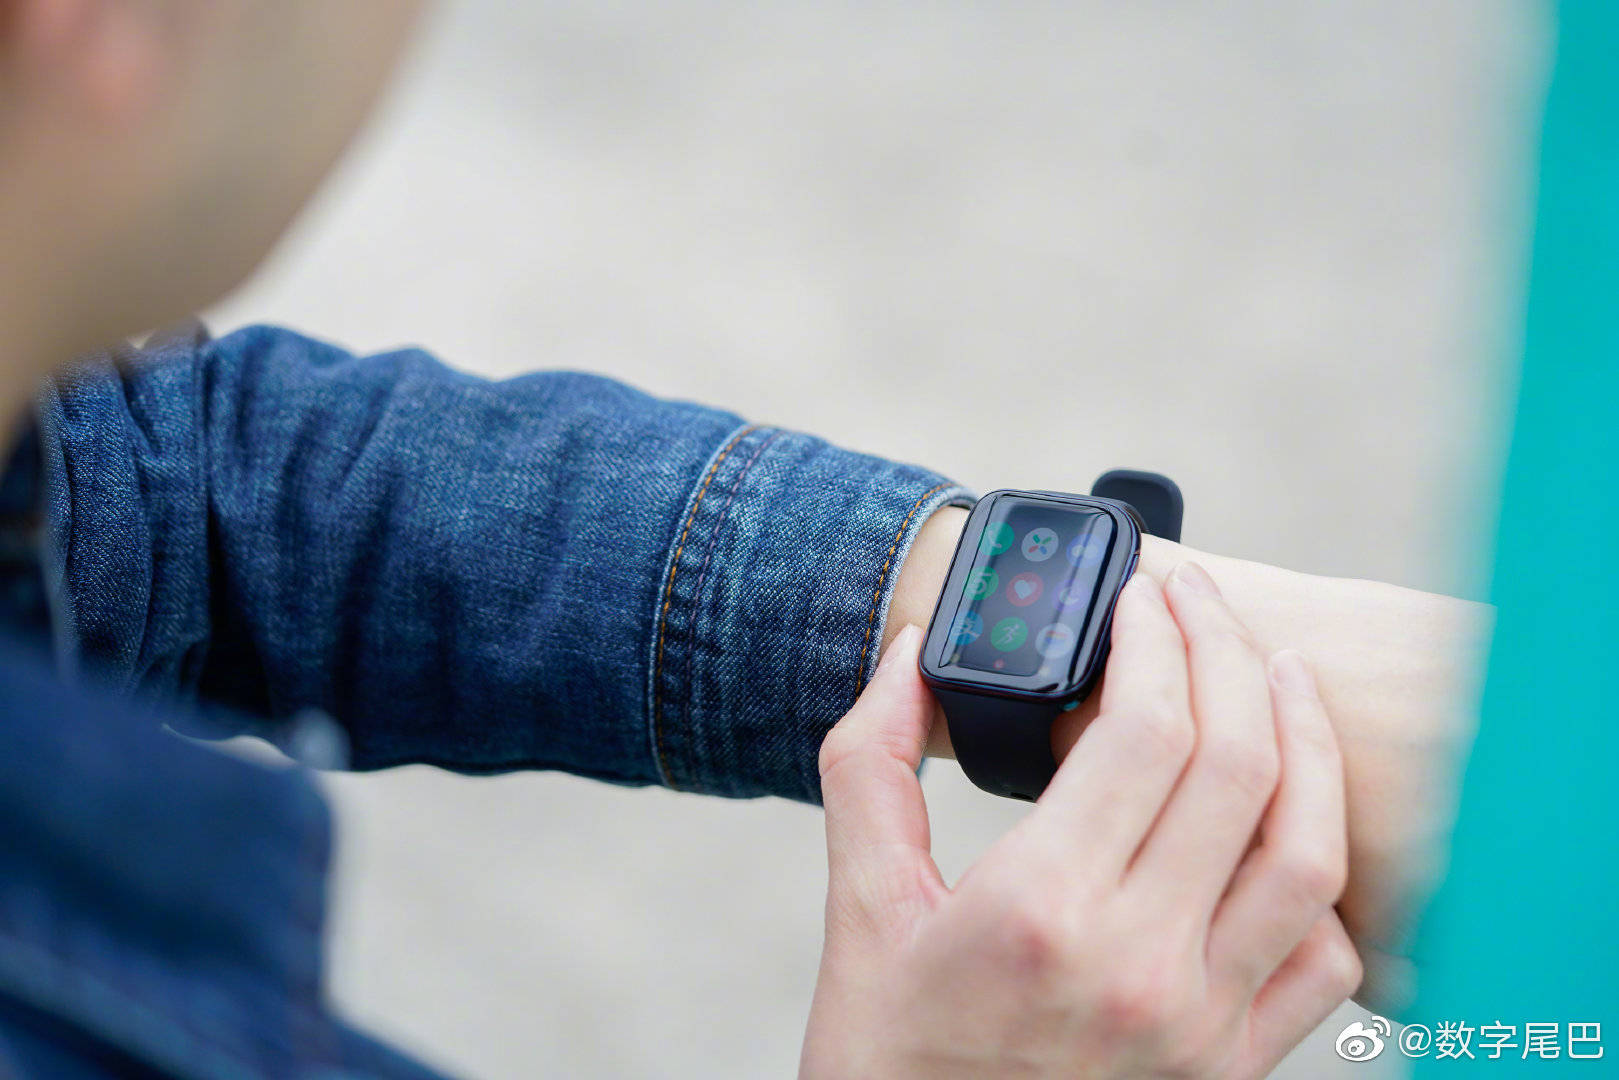 OPPO Watch chính thức ra mắt: Thiết kế giống
Apple Watch, hỗ trợ eSIM, sạc nhanh VOOC, giá từ 5 triệu
đồng